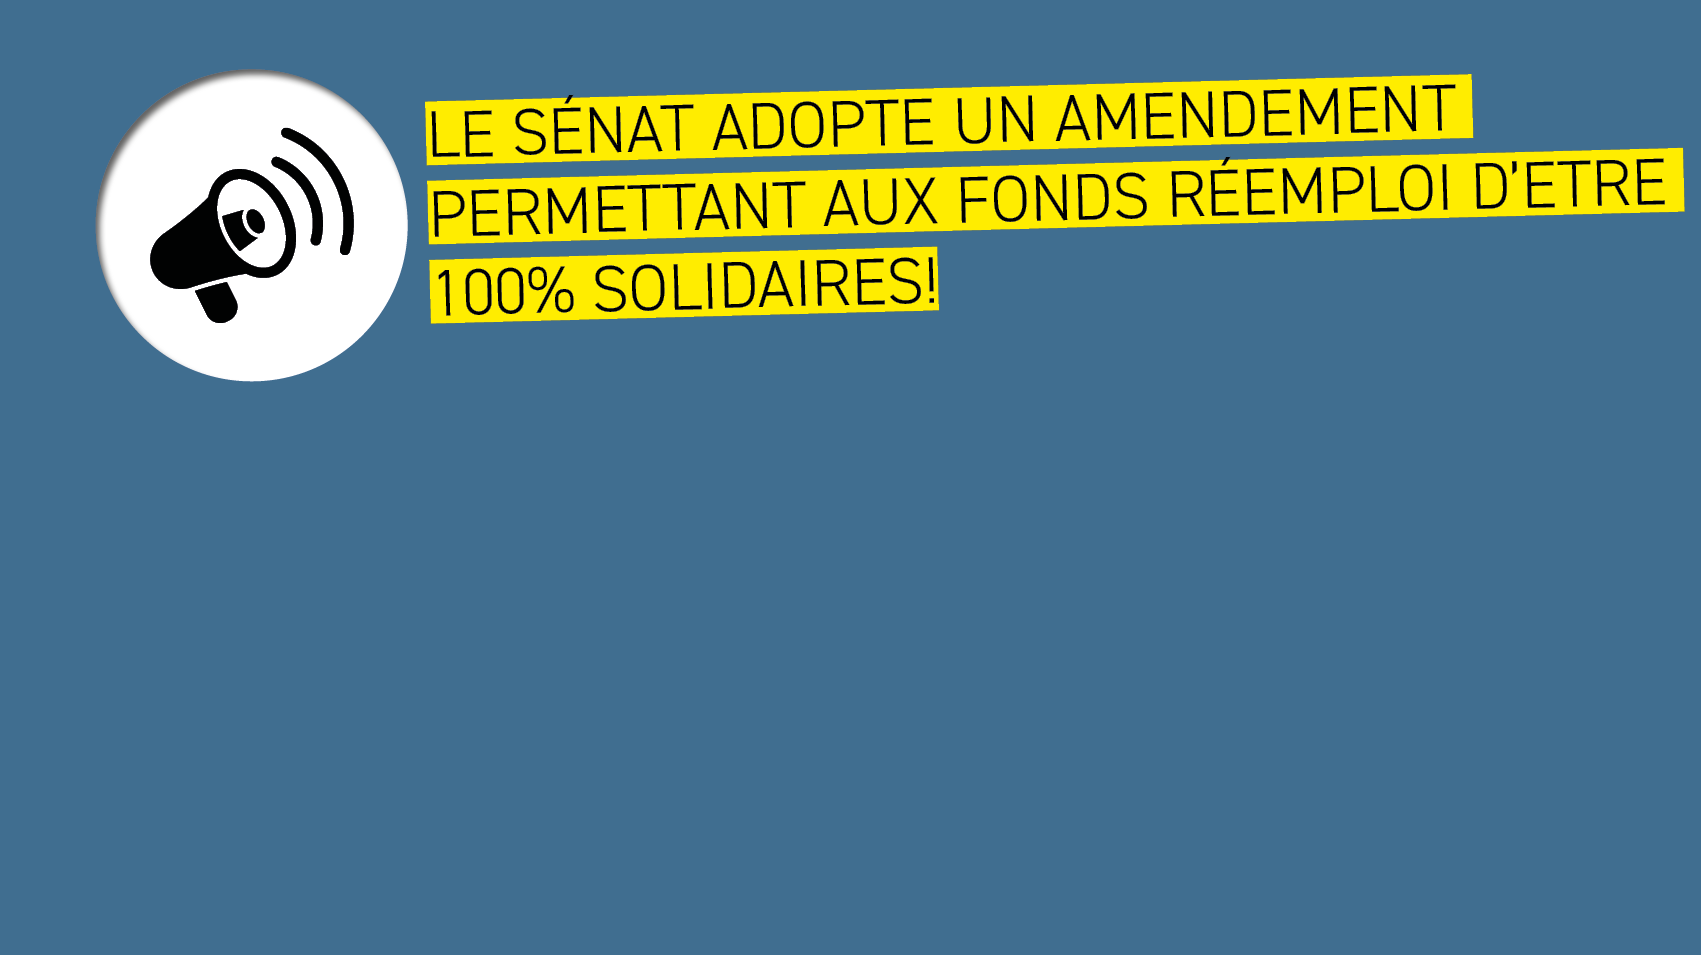 Le Sénat adopte un amendement permettant aux fonds réemploi d'être 100% solidaires !